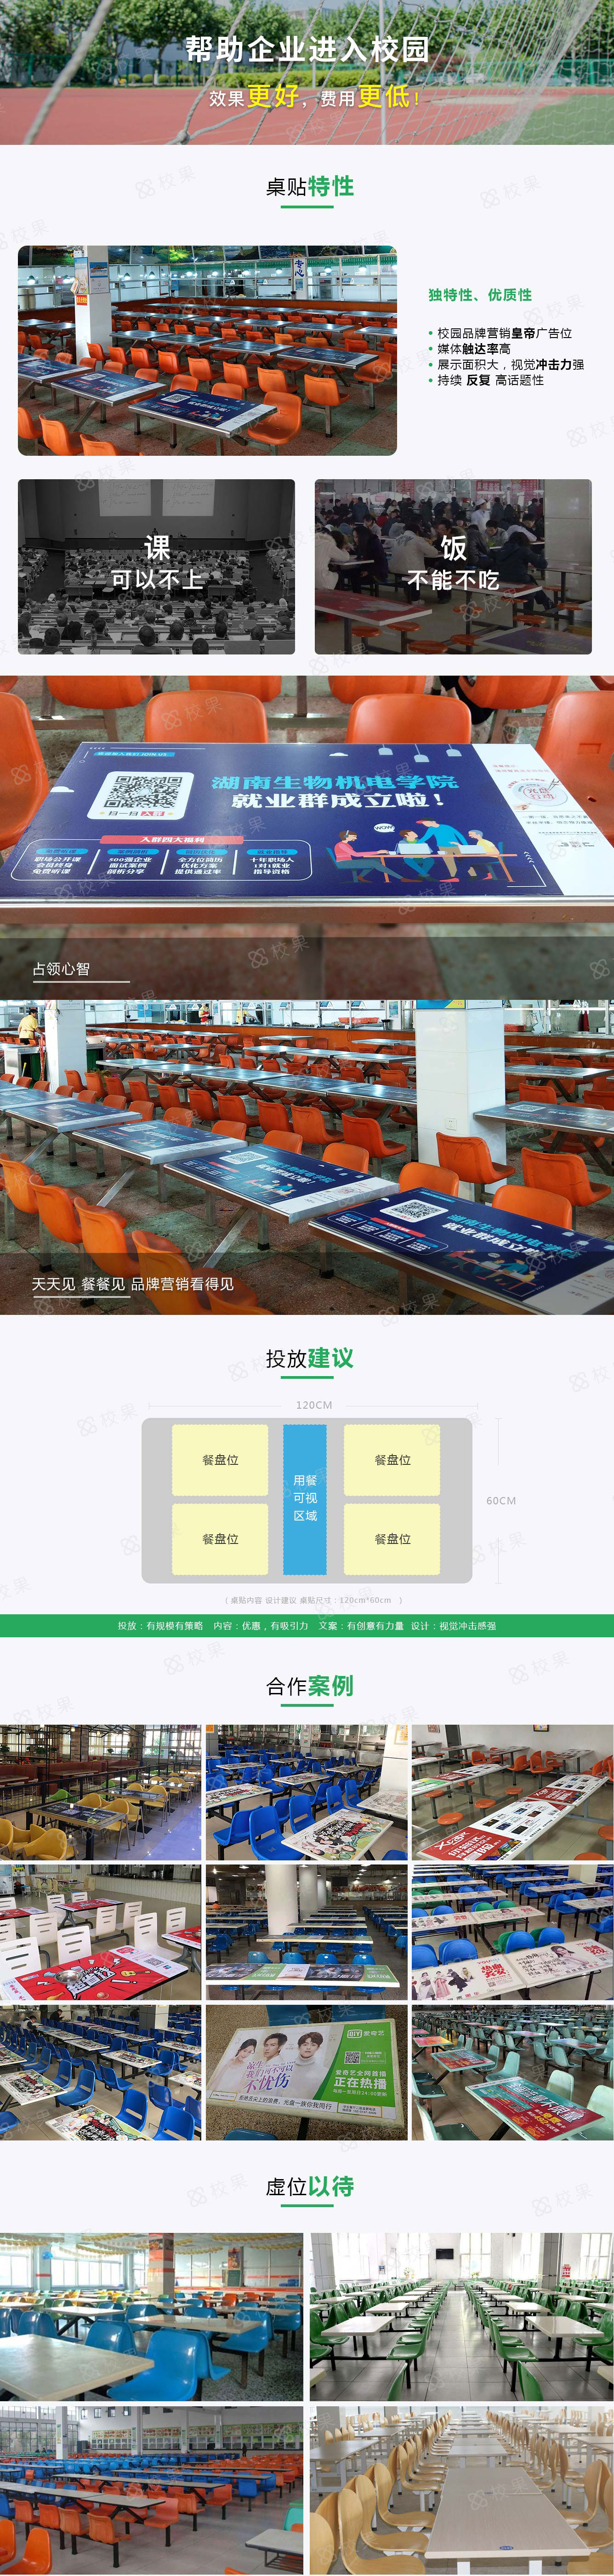 校园桌贴 北京电子科技职业学院